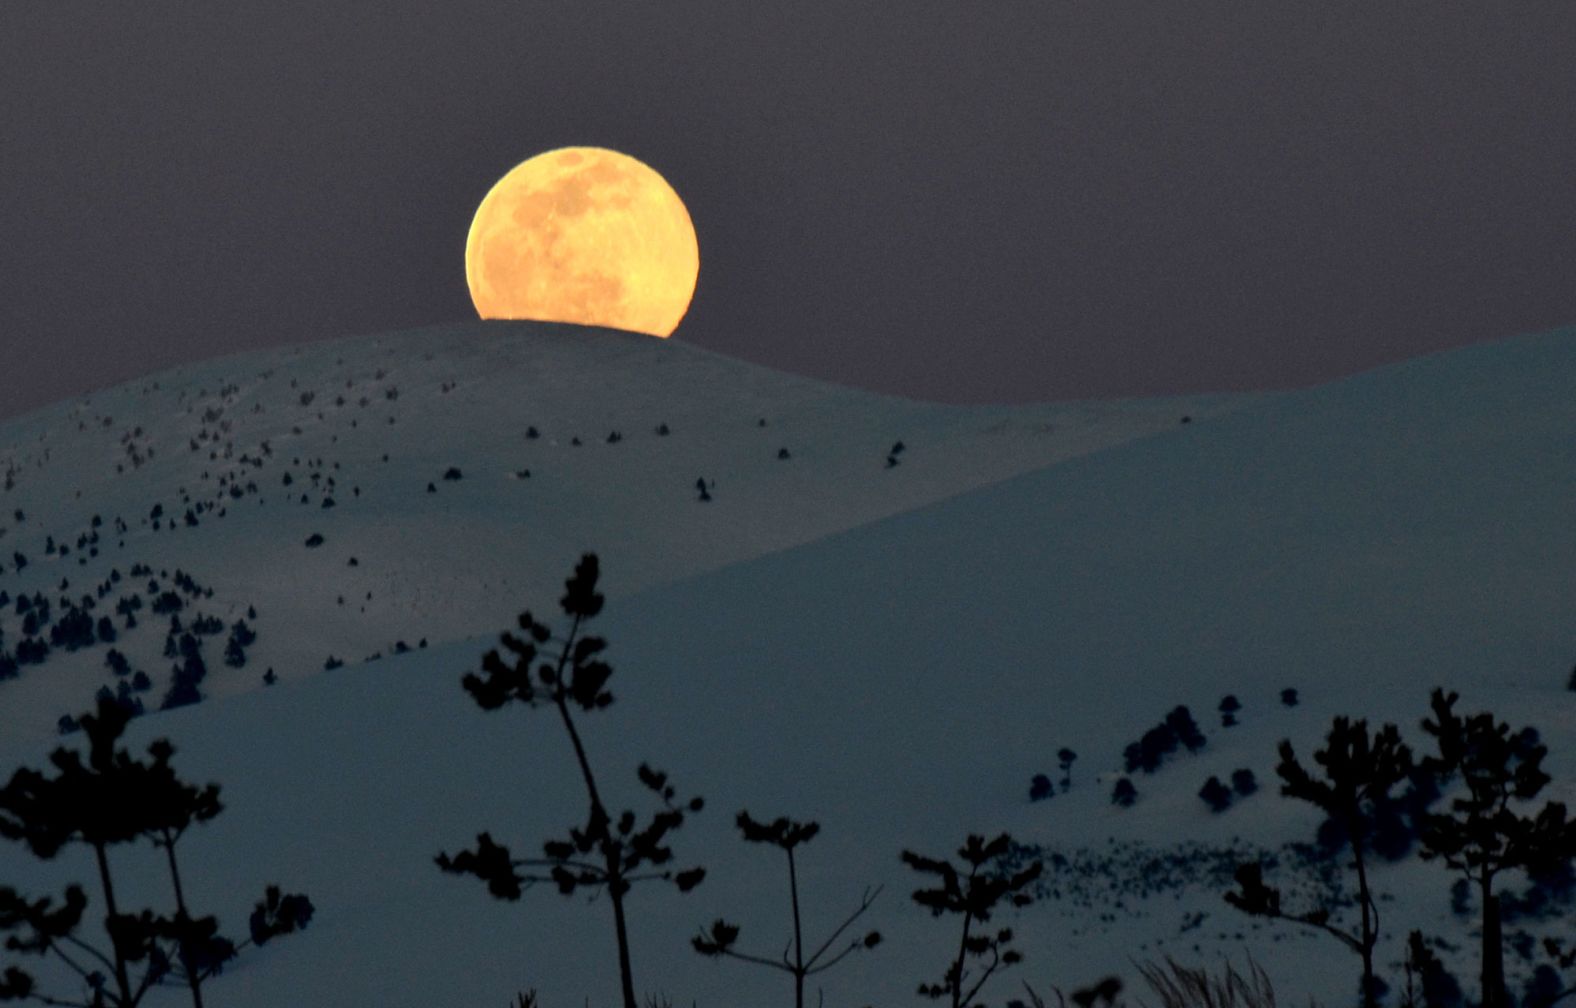 The moon rises over Kars, Turkey.